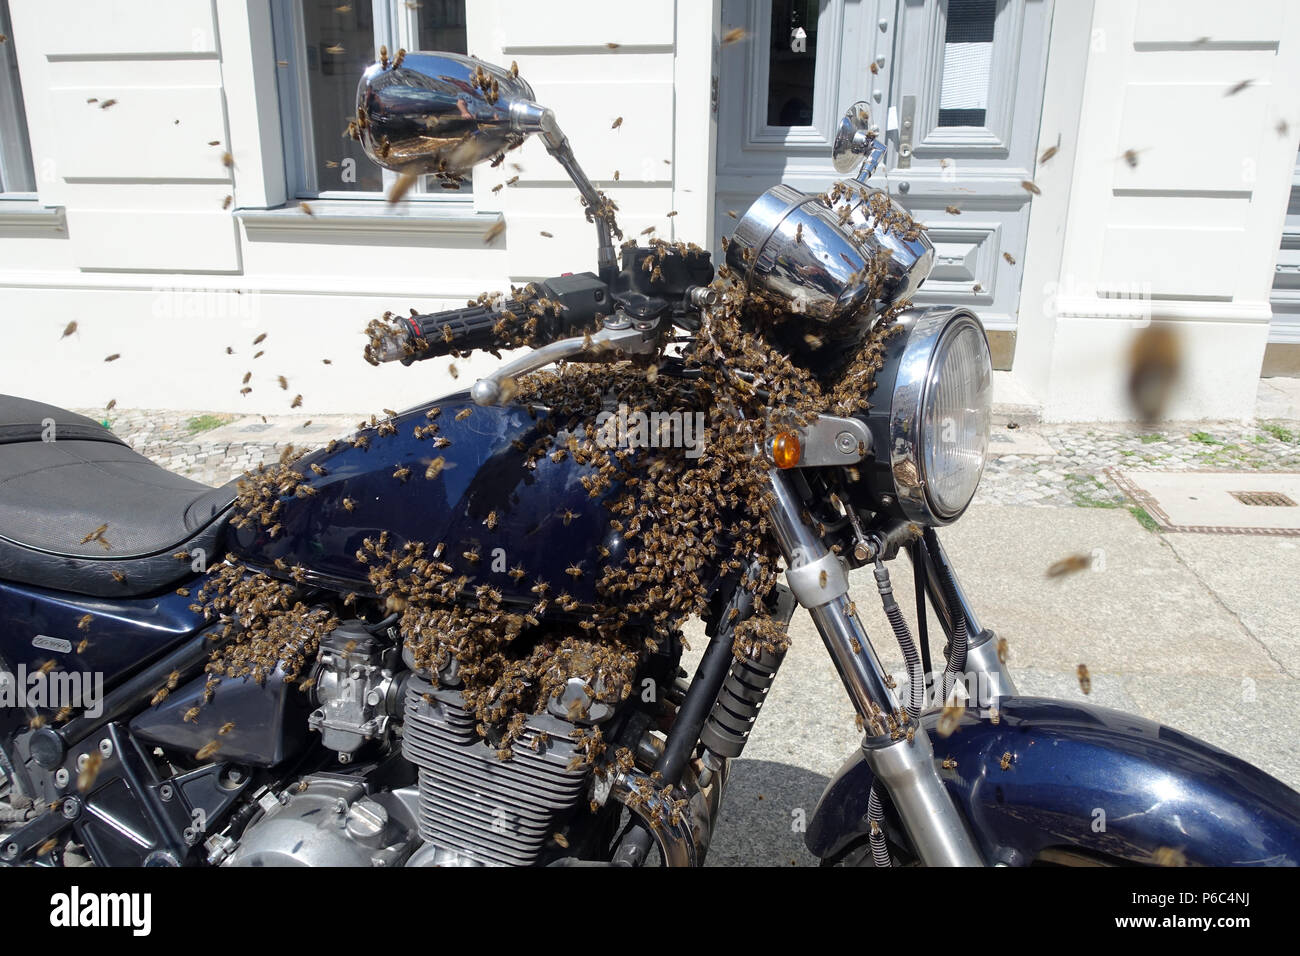 Berlin Kreuzberg, un essaim d'abeilles s'est assis sur une moto et il est pris Banque D'Images